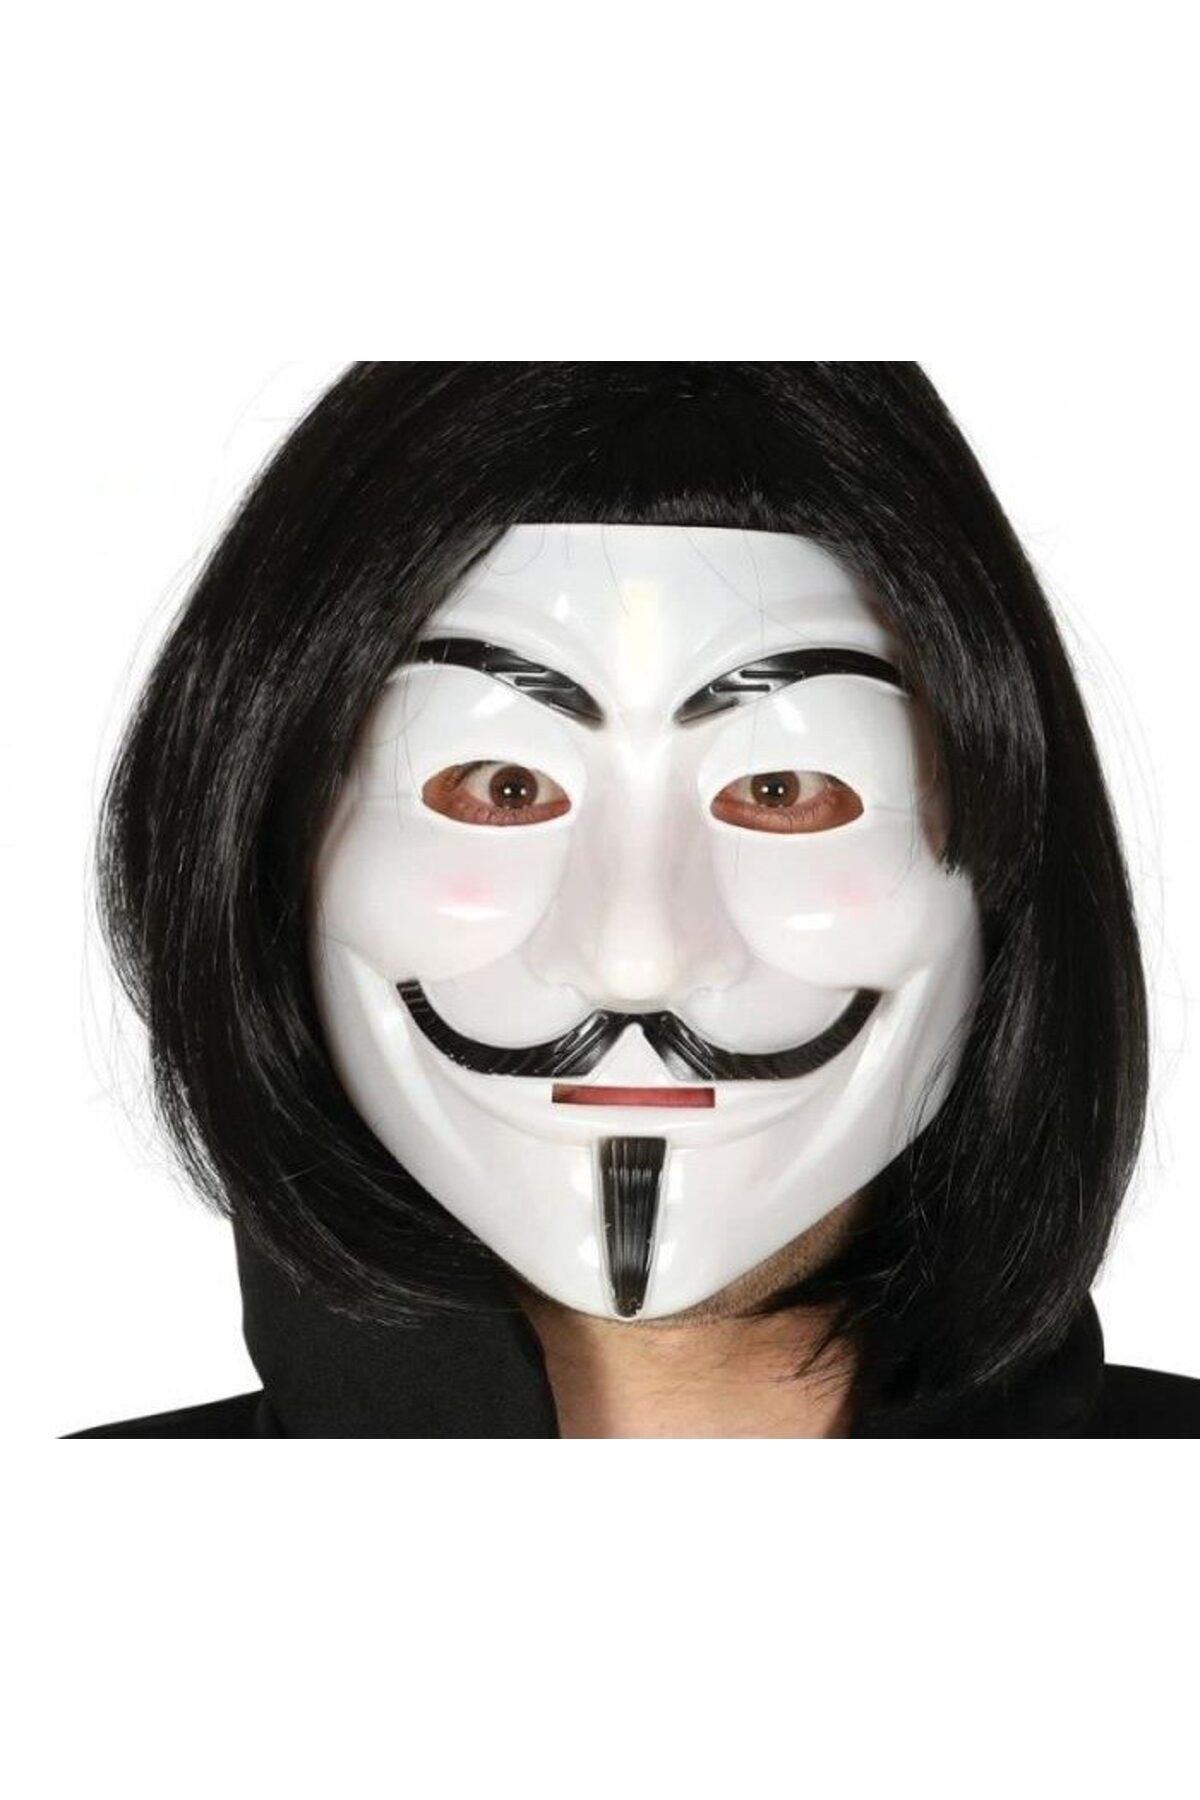 VillU CLZ192 Siyah Renk Takma Kısa Saç Ve V For Vendetta Maskesi Anonymous Maskesi (4172)